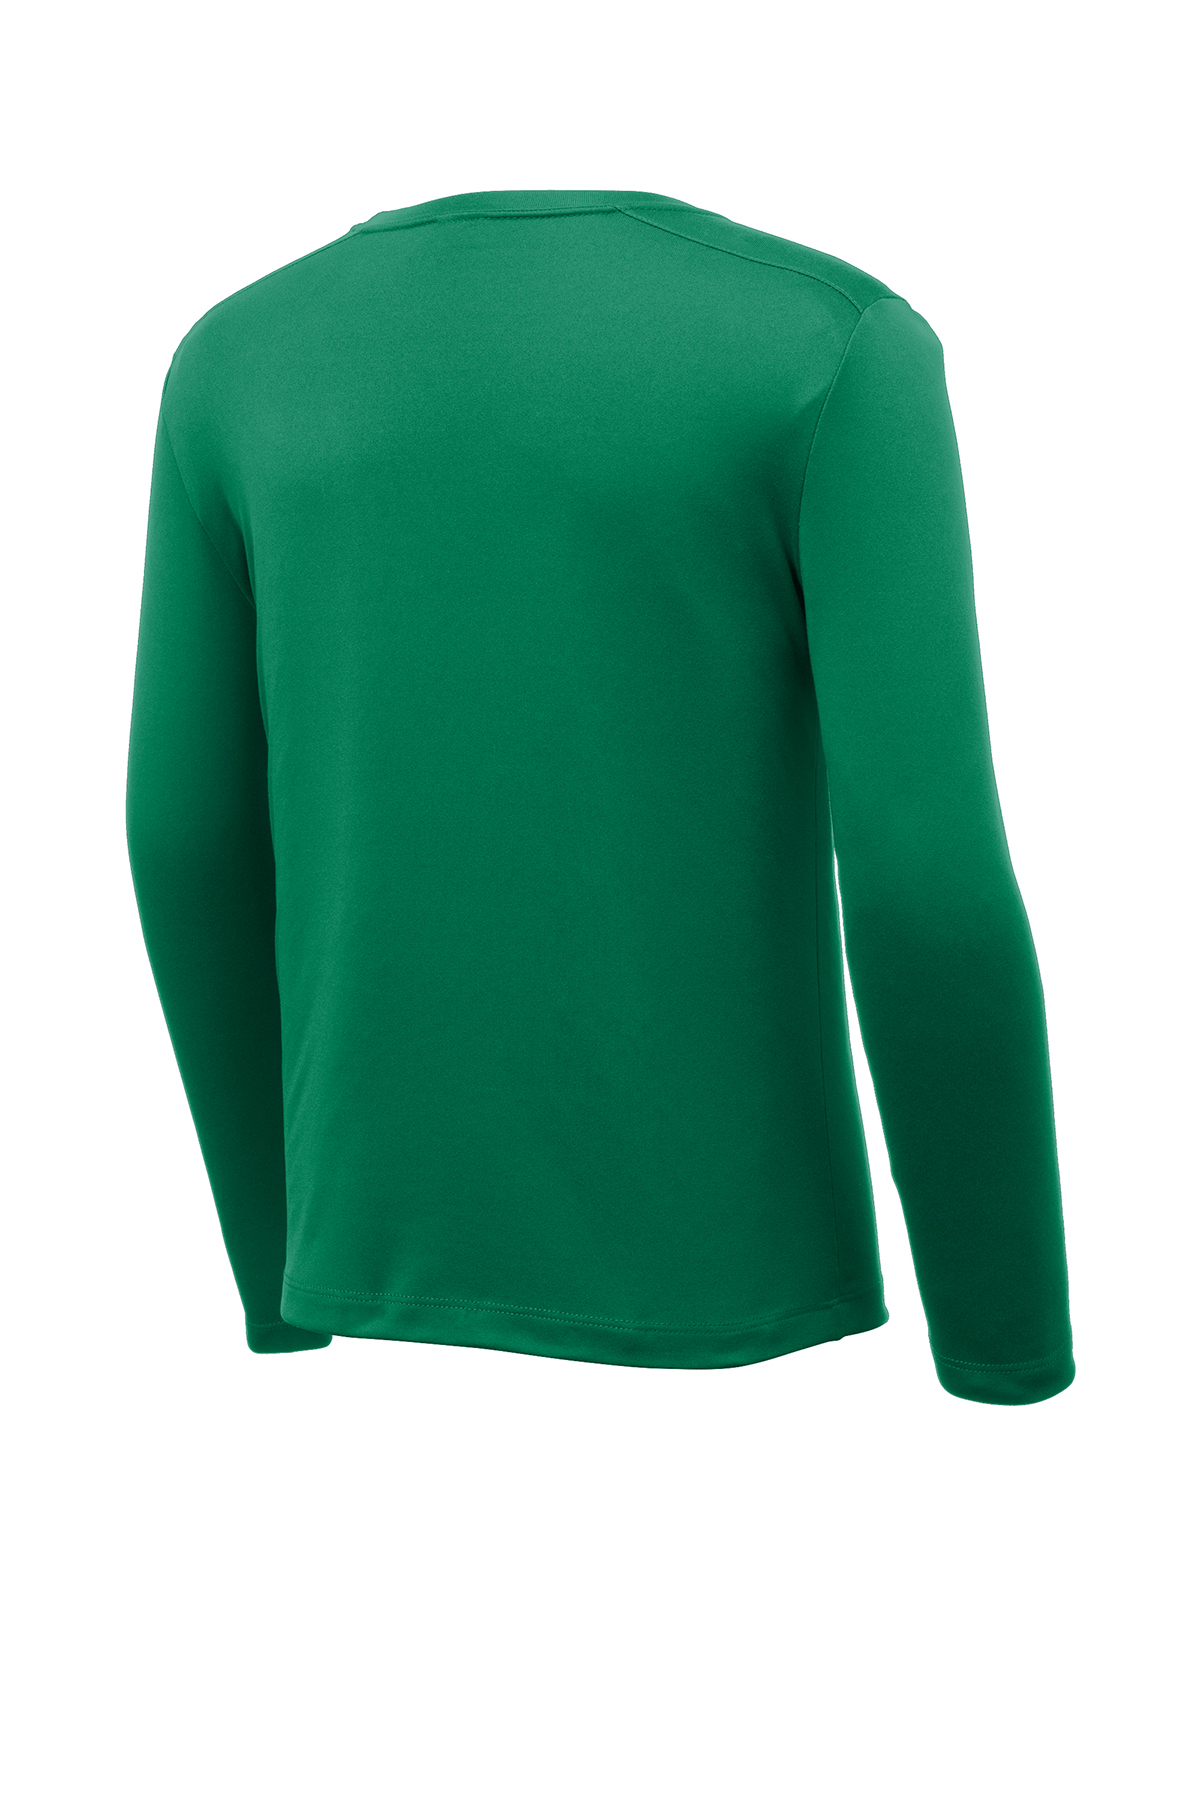 Taeko Cotton Jersey Full Sleeves Goal Printed T-Shirt & Lounge Pant Set -  Green & Blue